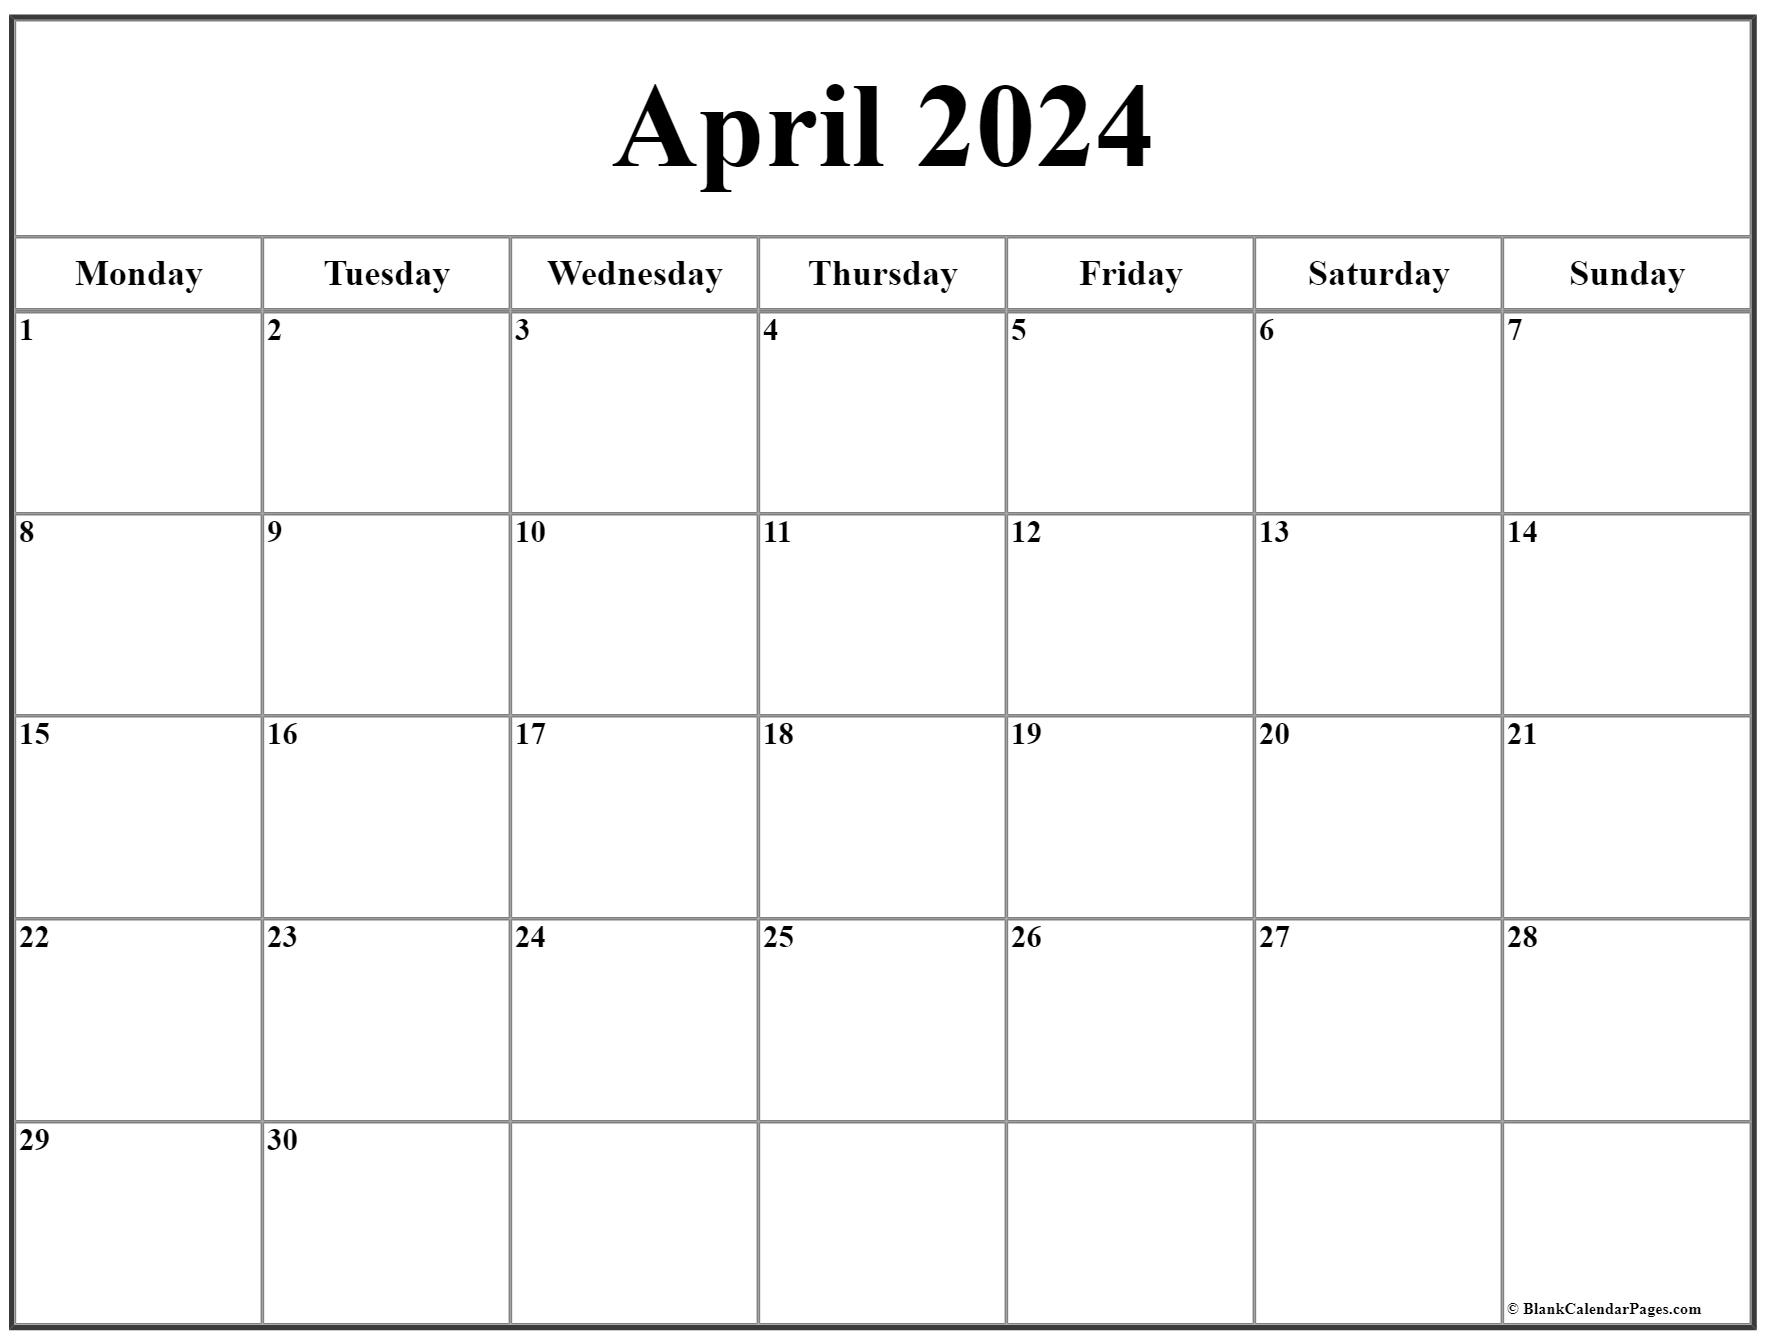 Monday Start Calendar 2022 April 2022 Monday Calendar | Monday To Sunday